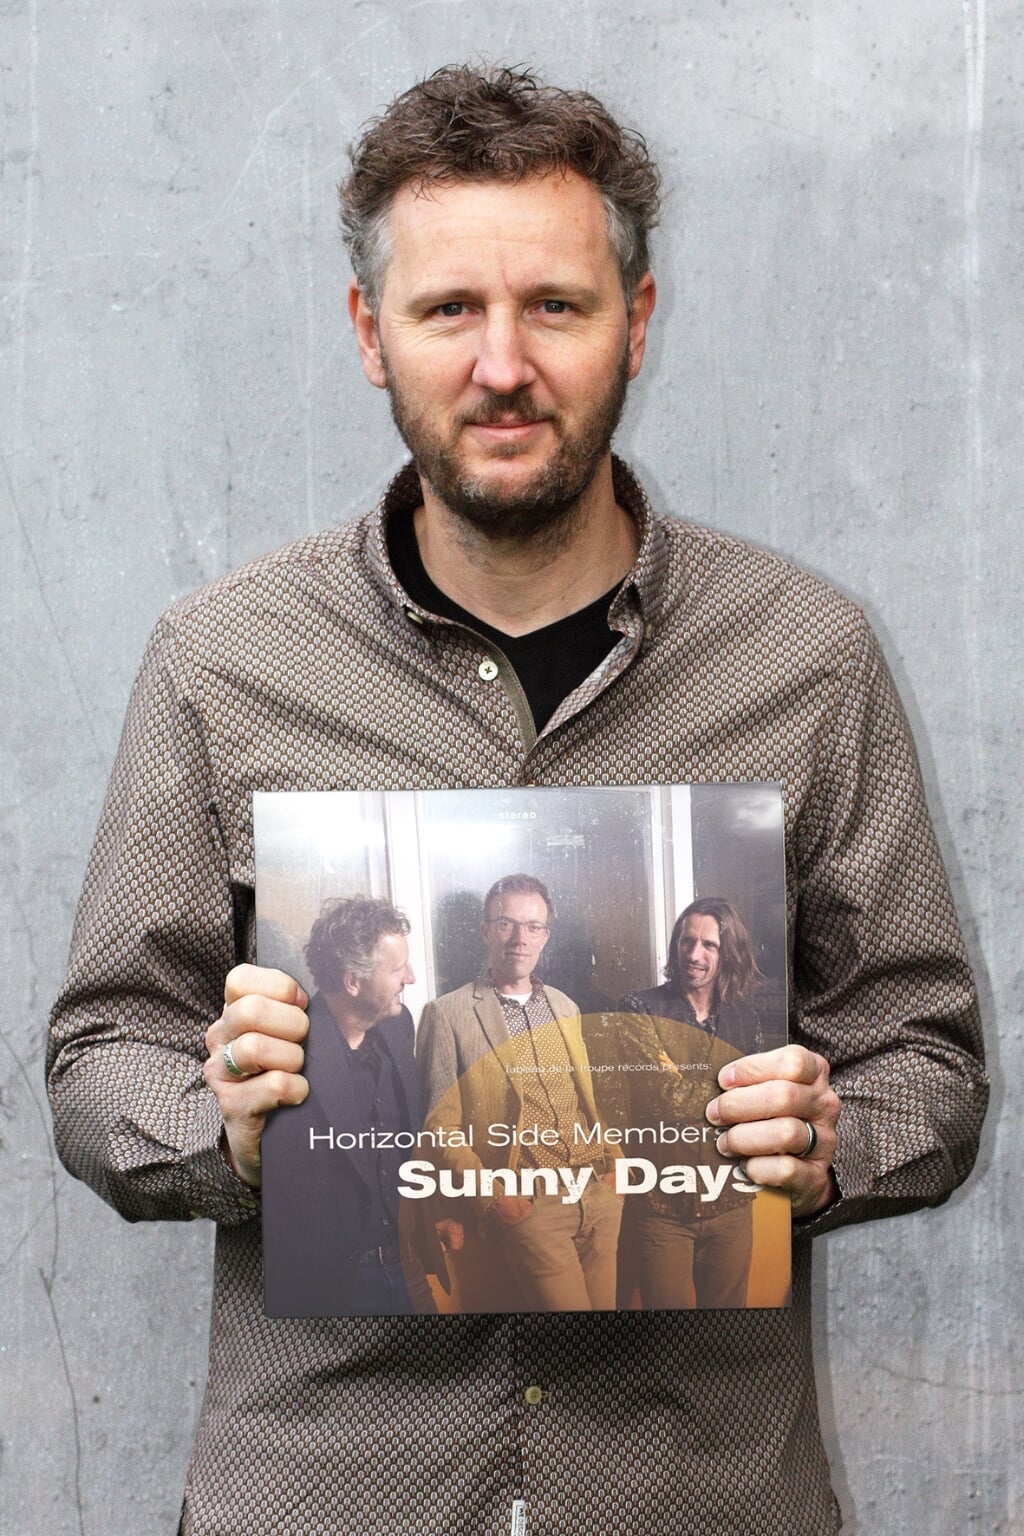 Het muzikale project van Léon Fransen leidt deze week tot de release op Spotify van het eerste album ‘Sunny Days’. 